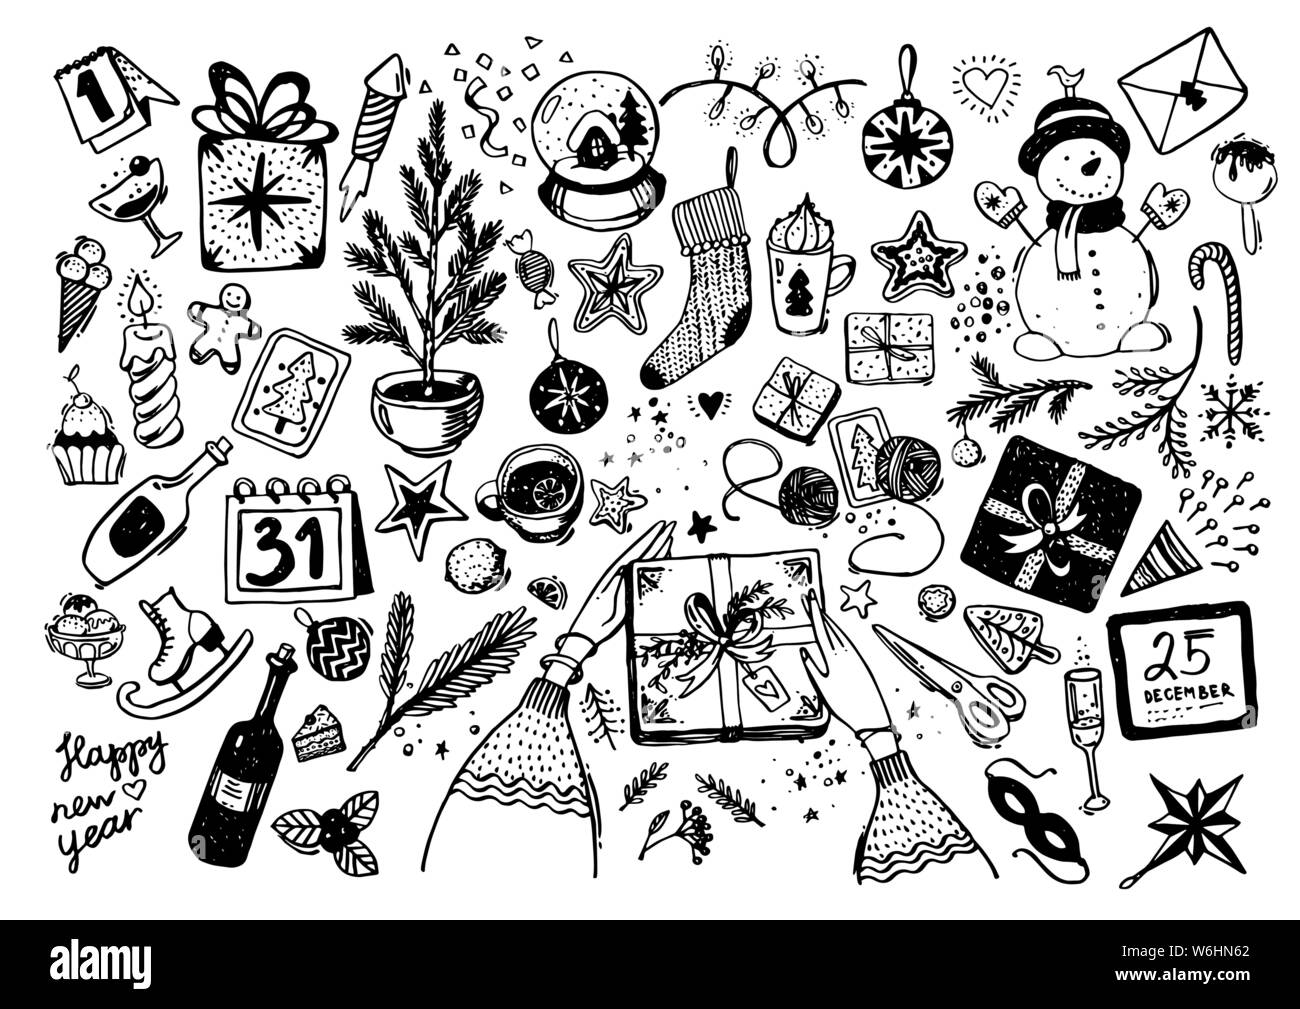 Sketchy Vektor handgezeichnete Doodle cartoon Satz von Objekten und Symbolen auf das Neue Jahr und Thema Weihnachten. Eine große Auswahl an festlichen Elemente für Grußkarten, Design, Einrichtung, Hobbys, scrapbooking. Stock Vektor